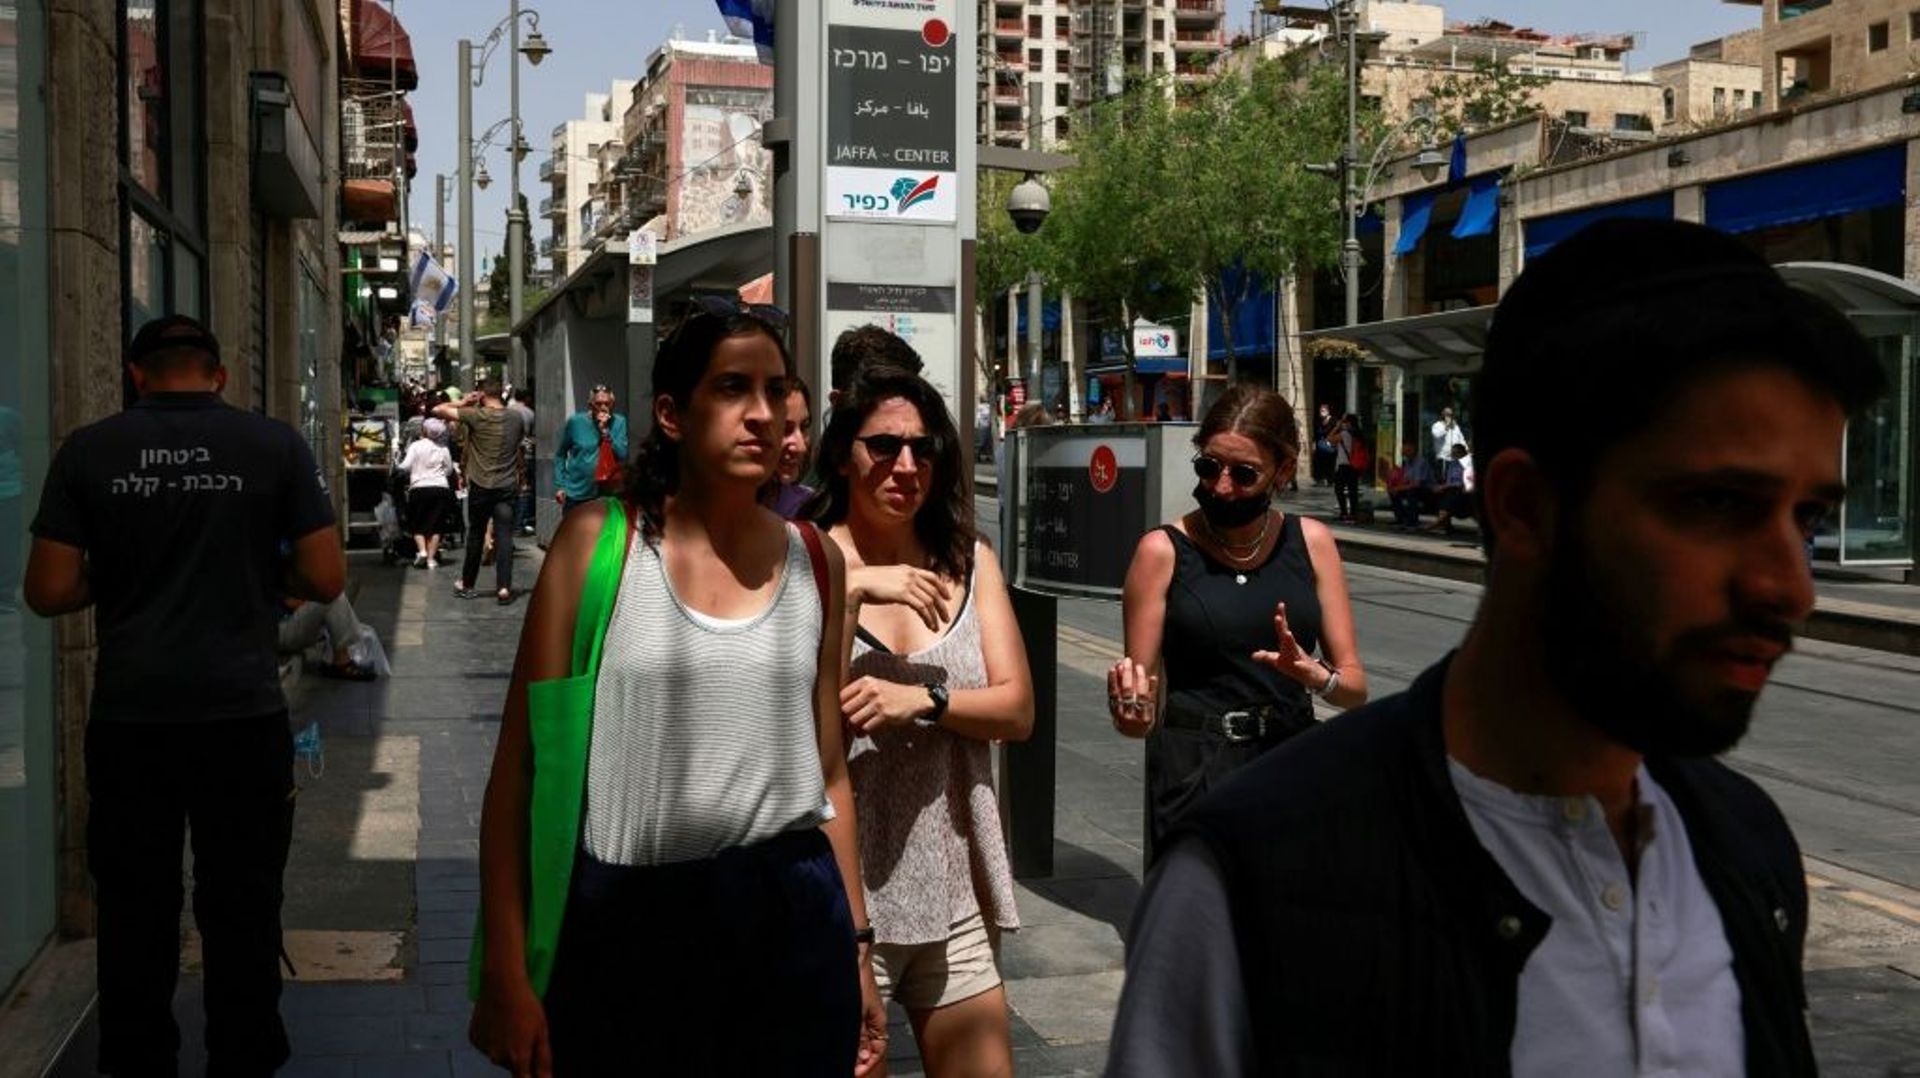 Des gens marchant dans une rue de Jérusalem sans porter de masques sanitaires après la levée de l'obligation en Israël, le 18 avril 2021